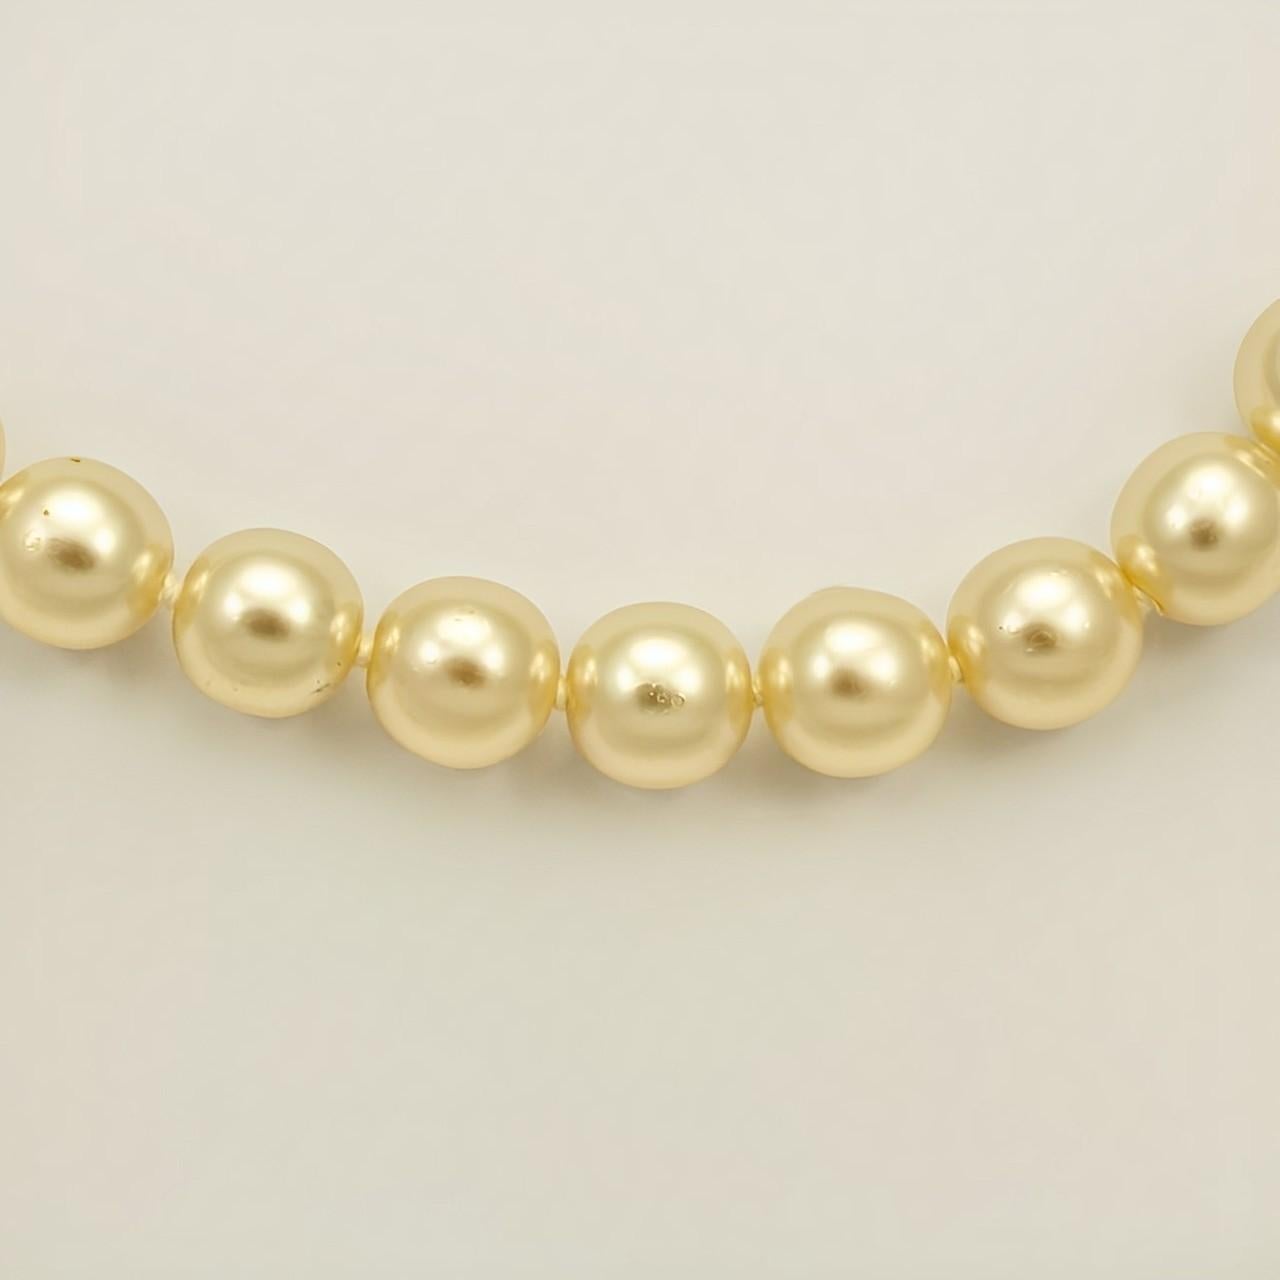 Wunderschöne cremefarbene Glasperlenkette mit einem runden, vergoldeten, geriffelten Verschluss, der mit drei Perlen besetzt ist. Die glänzenden Perlen werden zwischen den einzelnen Perlen geknotet. Messlänge 43,5 cm / 17,1 Zoll. Die Perlen sind 9